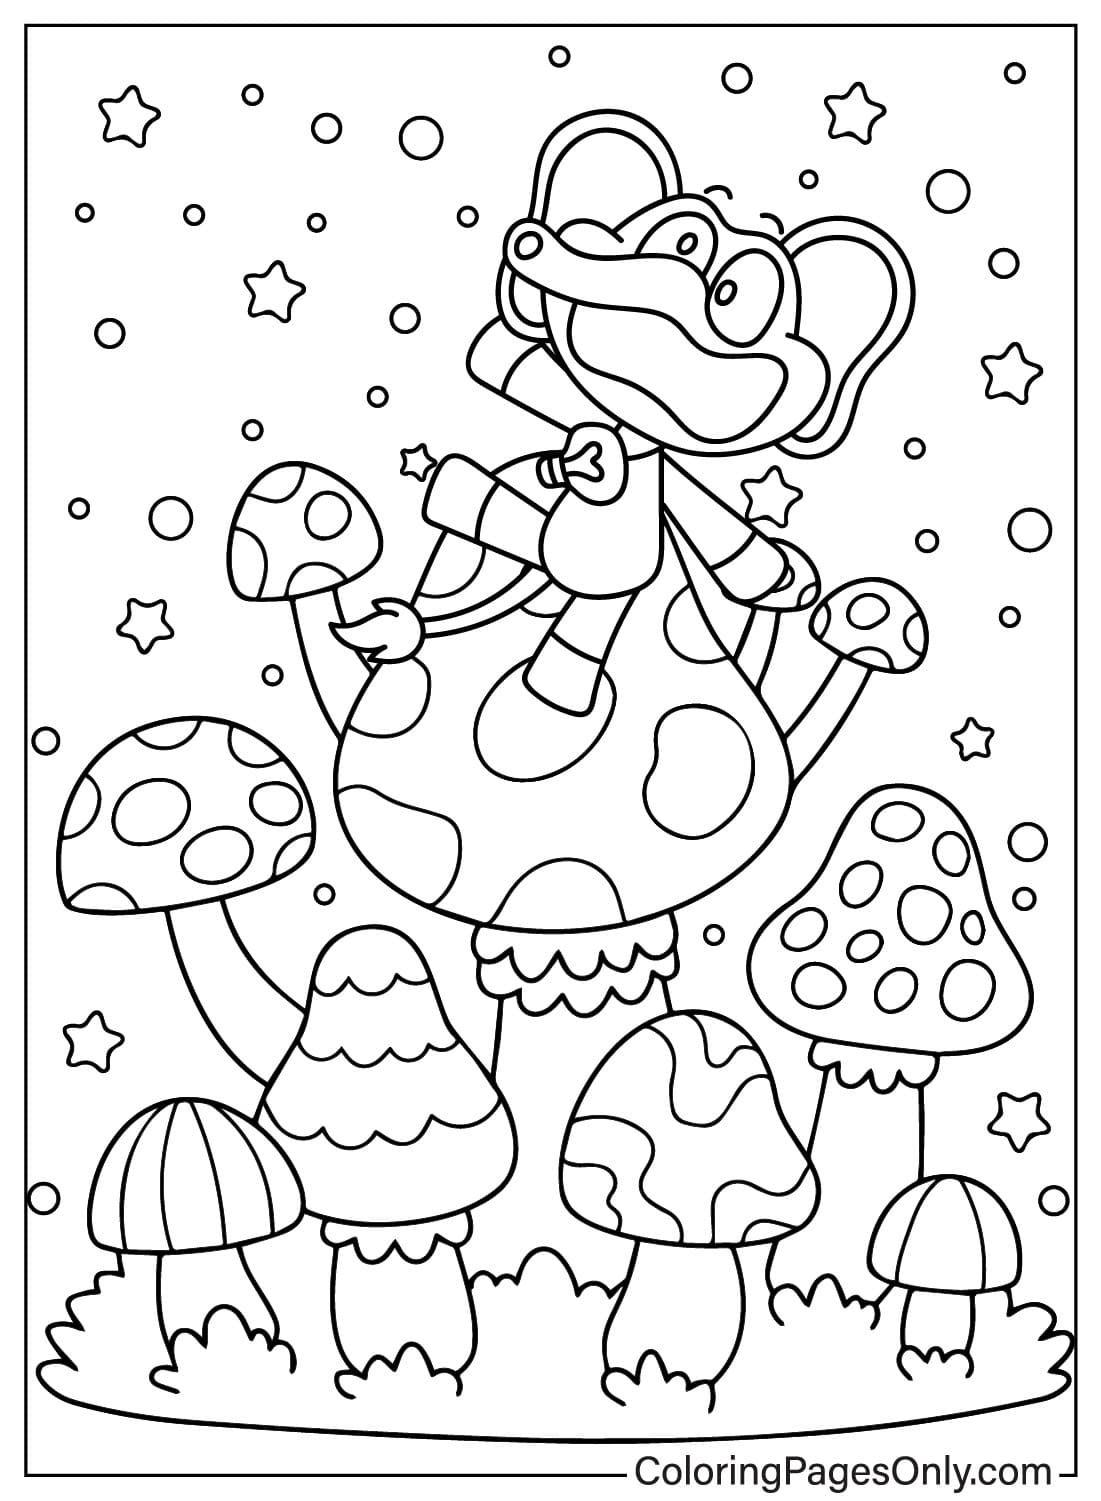 Bubba Bubbaphant and Mushroom Coloring Page from Bubba Bubbaphant